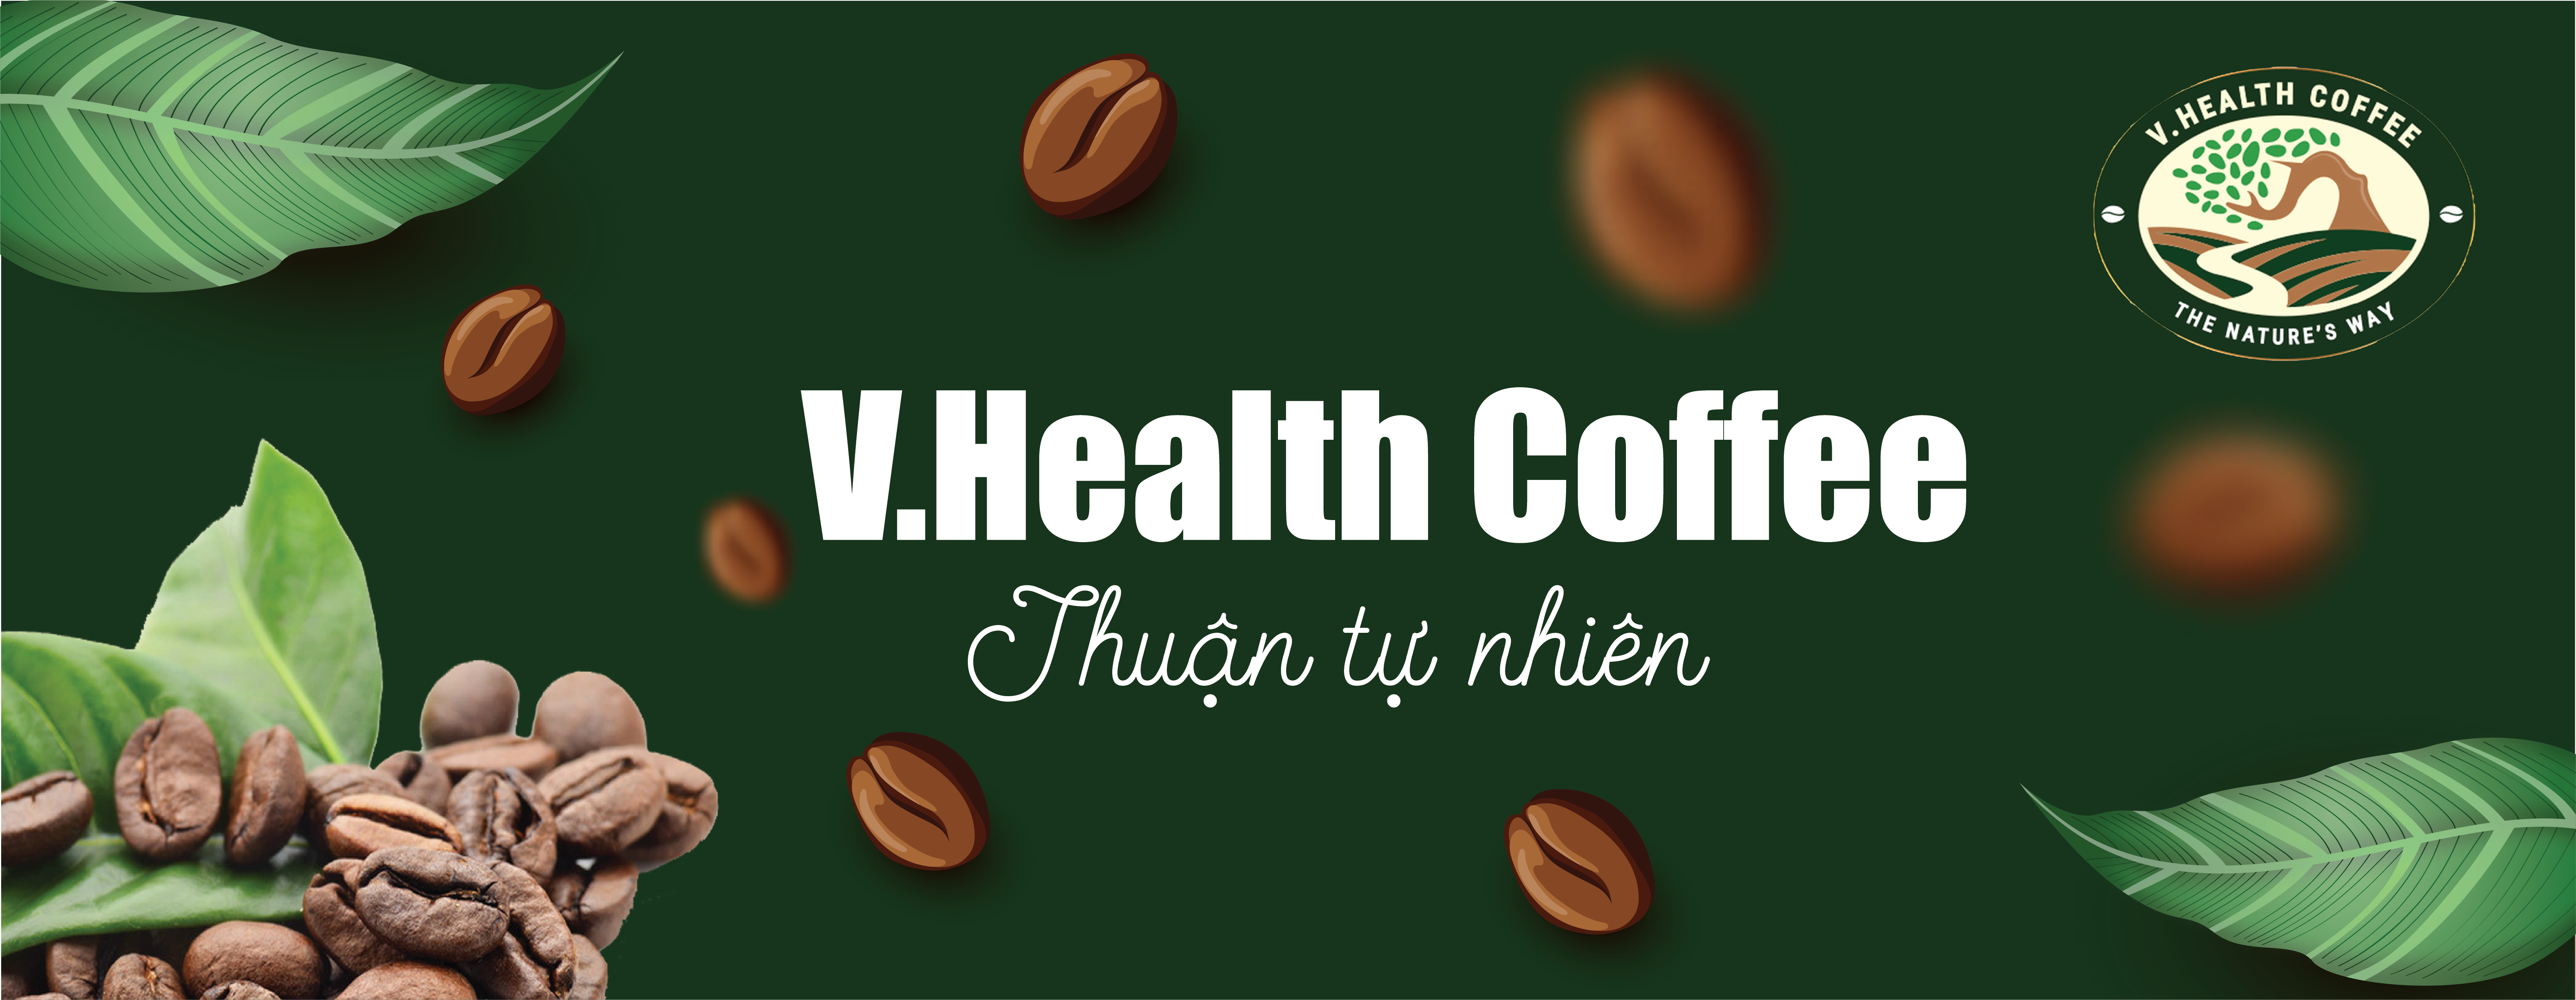 V.HEALTH COFFEE - CHUỖI CÀ PHÊ VÌ SỨC KHỎE 94 DỊCH VỌNG HẬU - CẦU GIẤY - HÀ NỘI